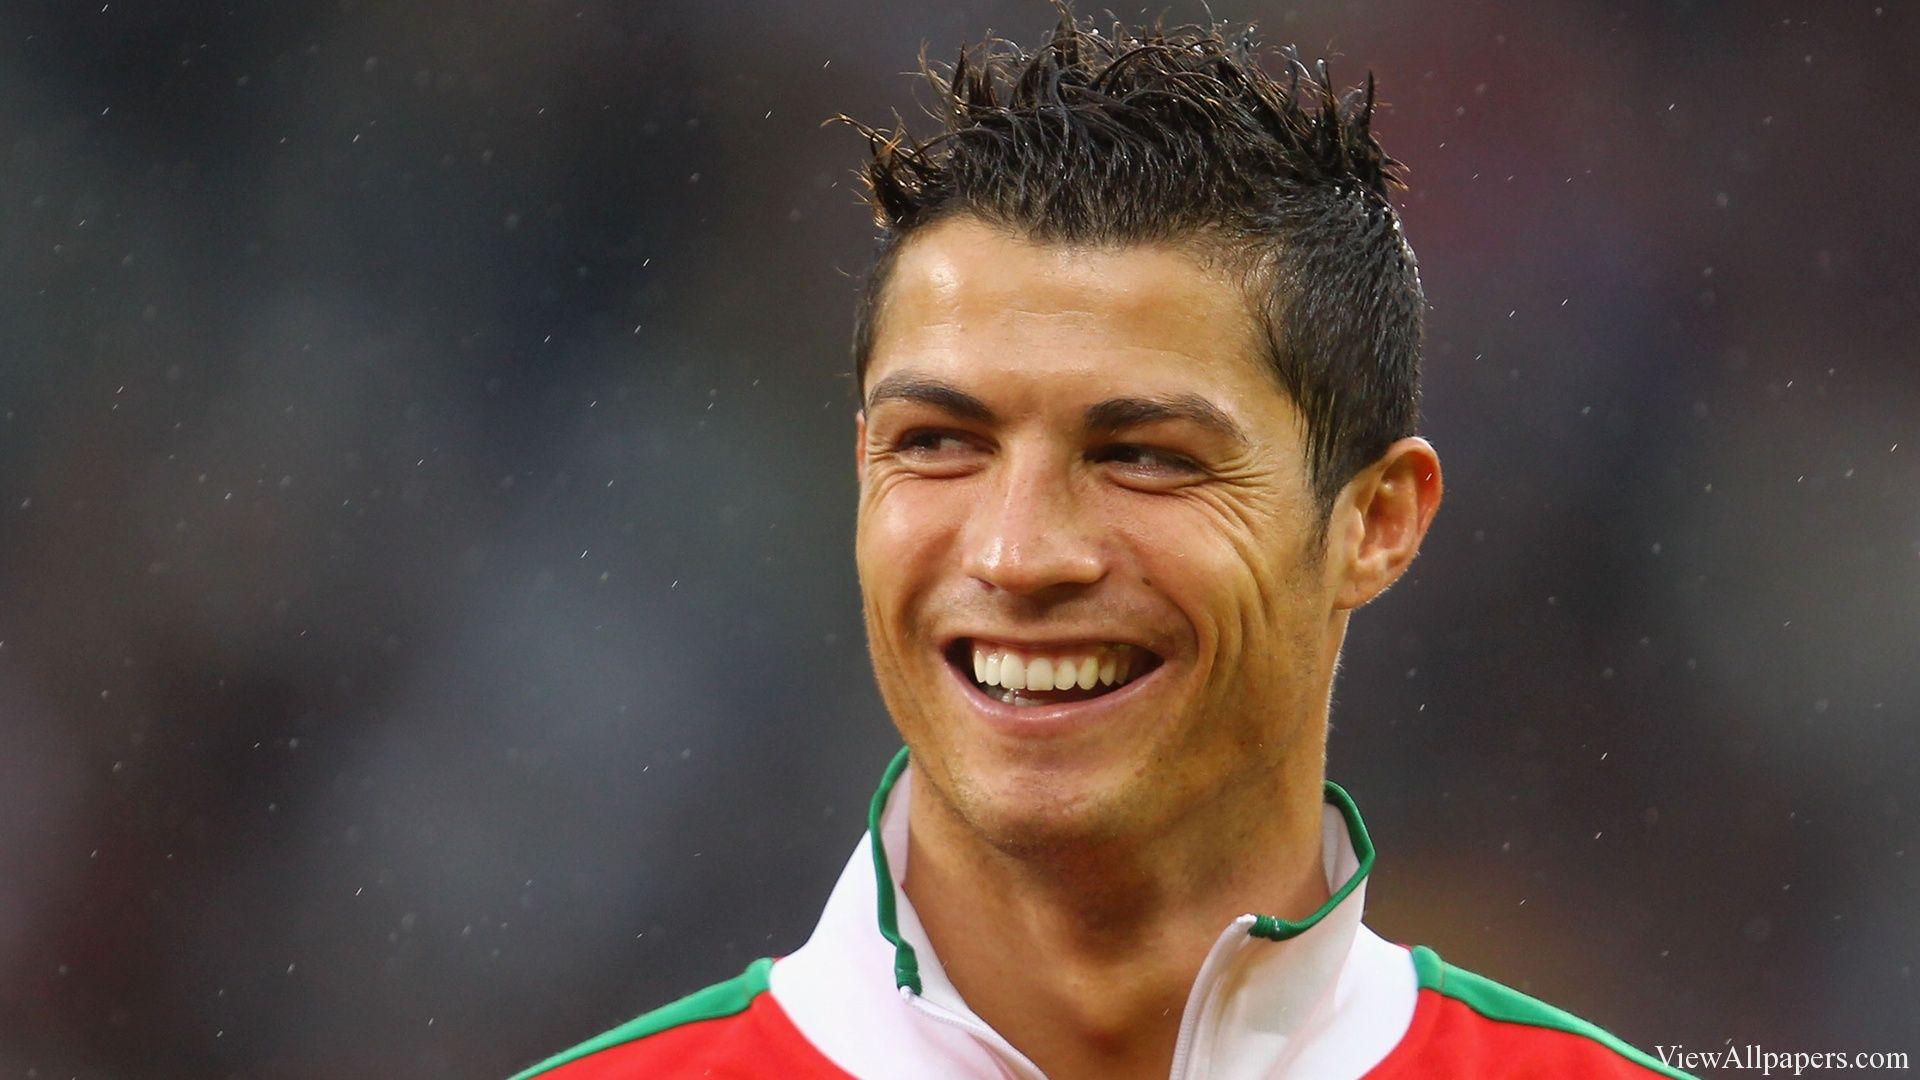 Cristiano Ronaldo Portugal HD. Viewallpaper